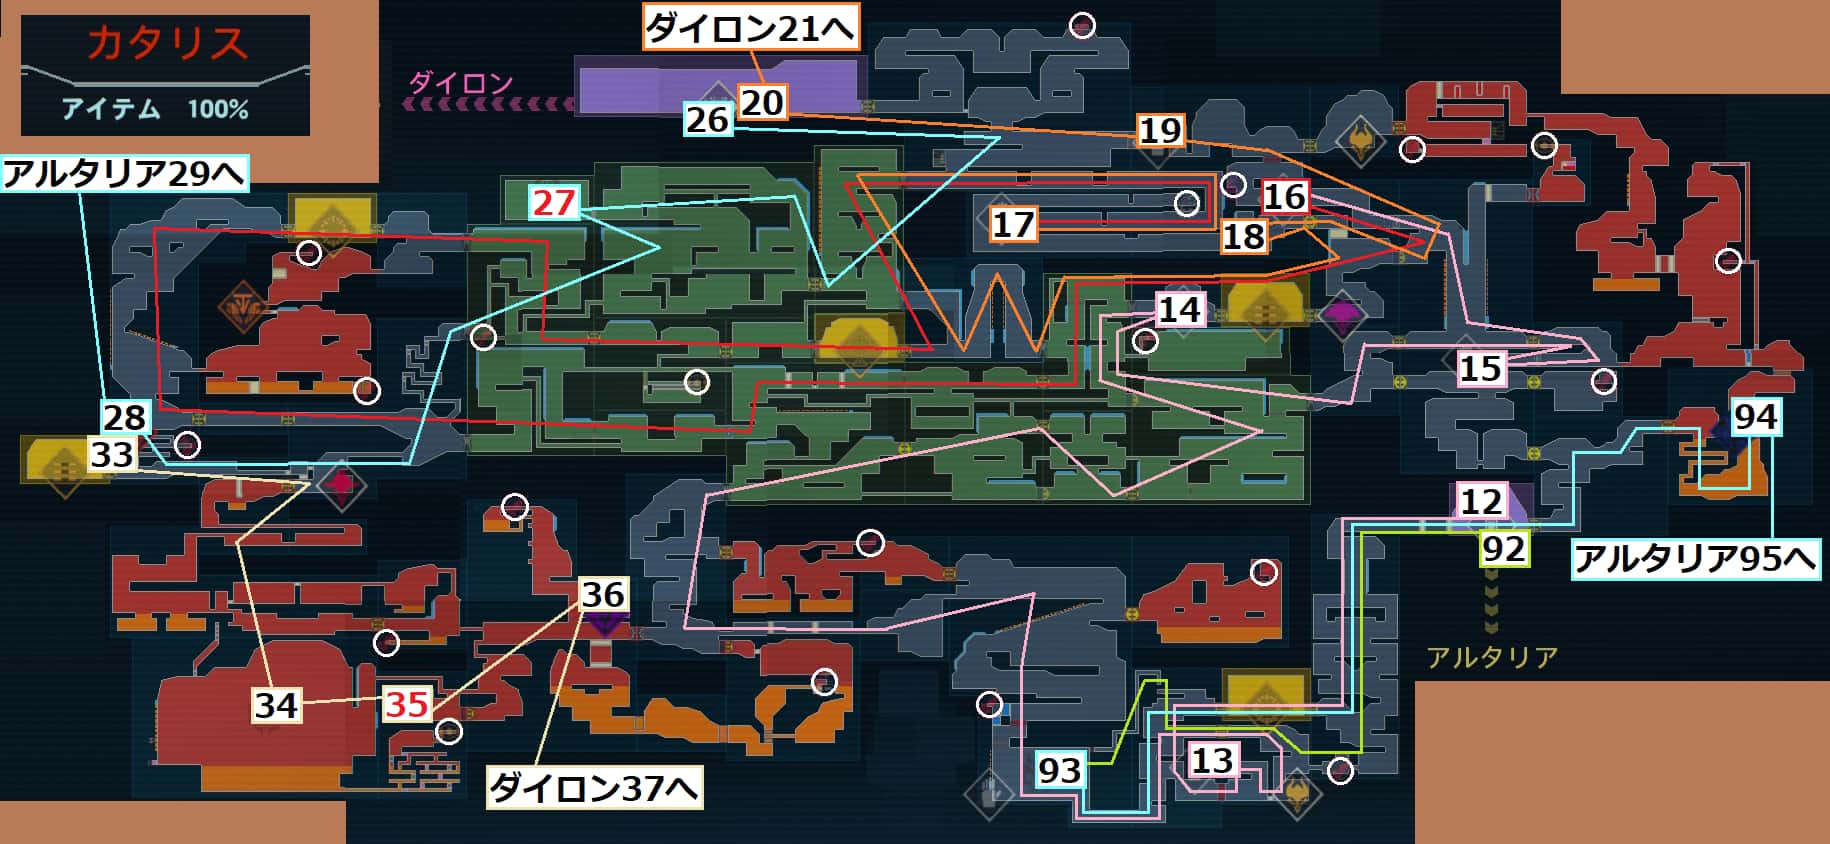 メトロイド ドレッド【Metroid Dread】カタリスの全体マップと進行ルート